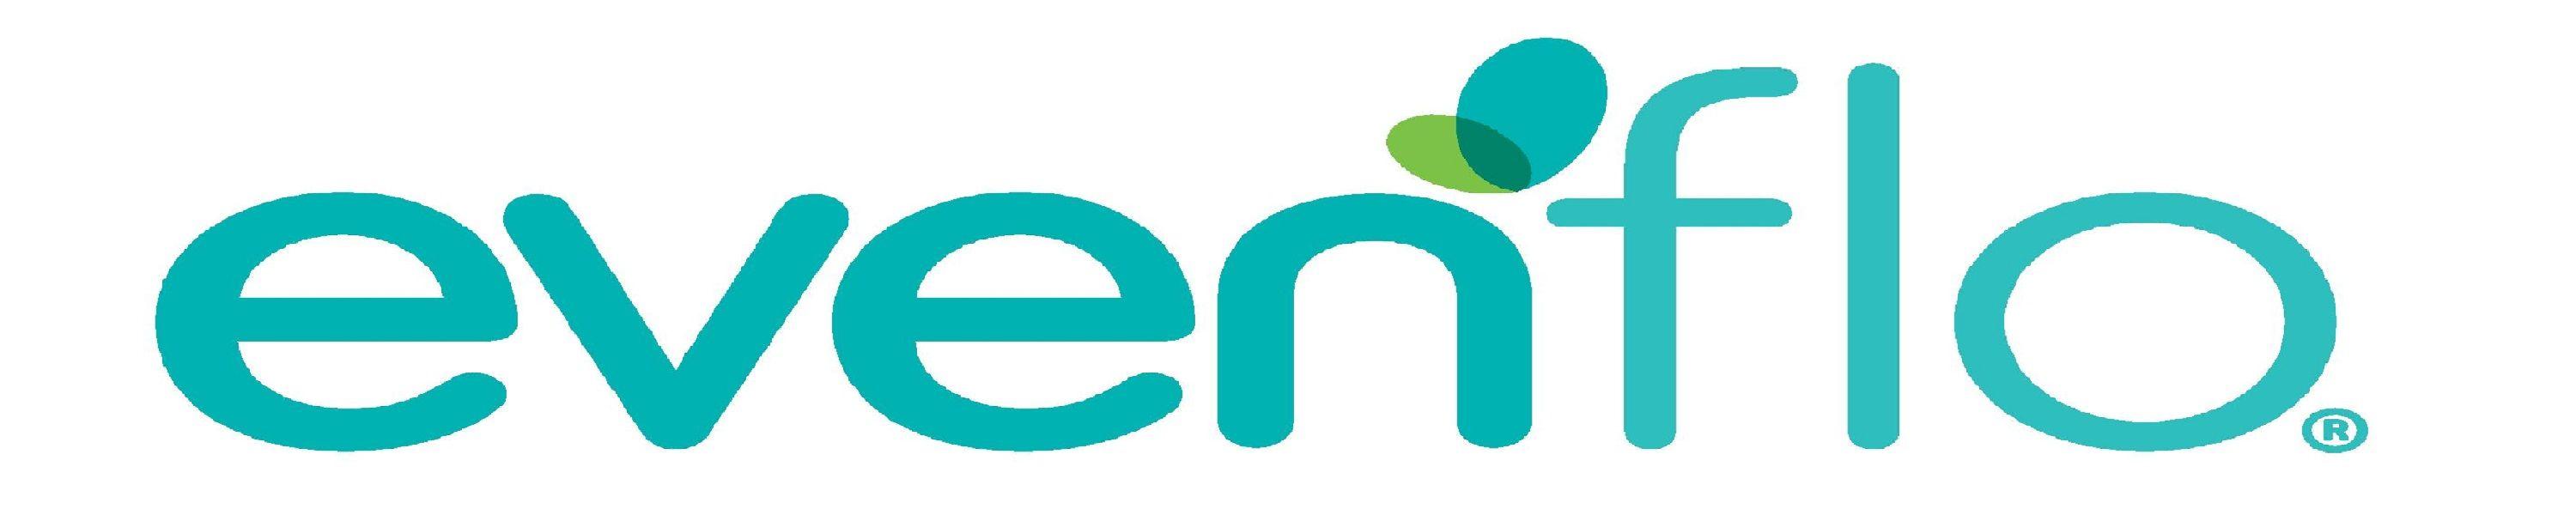 Evenflo Logo - Evenflo Logo | www.topsimages.com